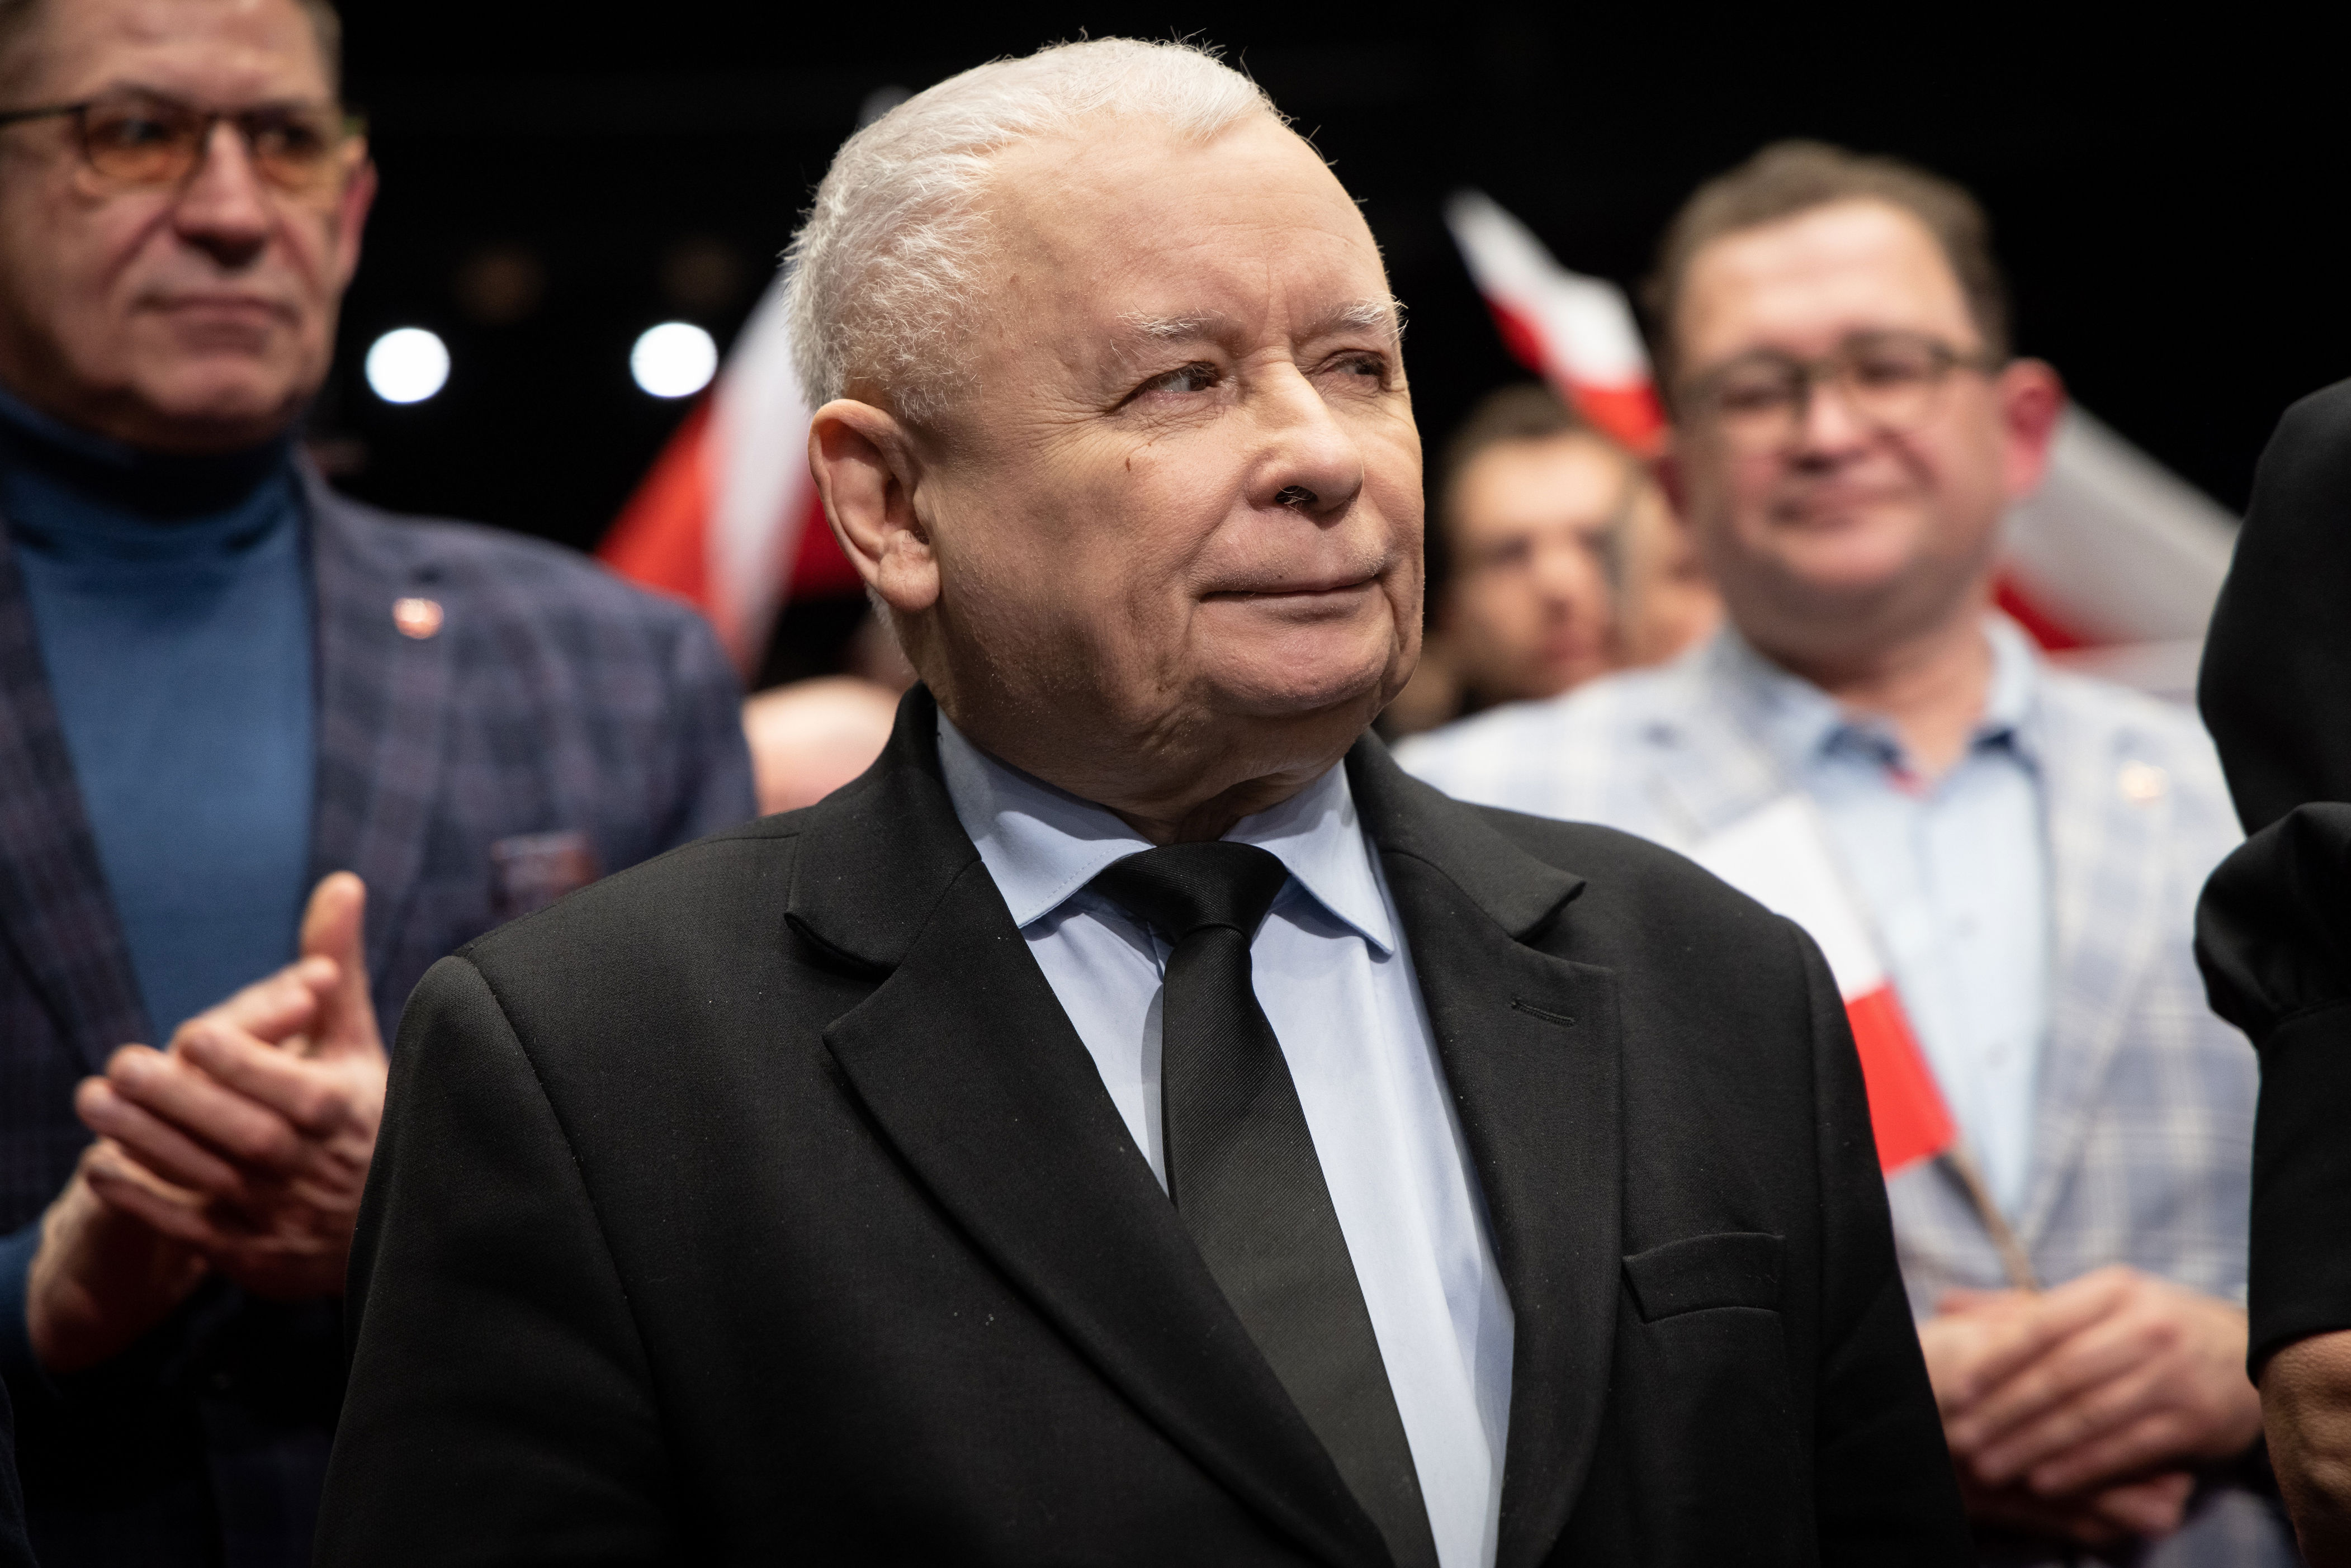 srebrna, dwie wieże i nagrania z jarosławem kaczyńskim. nieoficjalnie: będzie prokuratorskie śledztwo